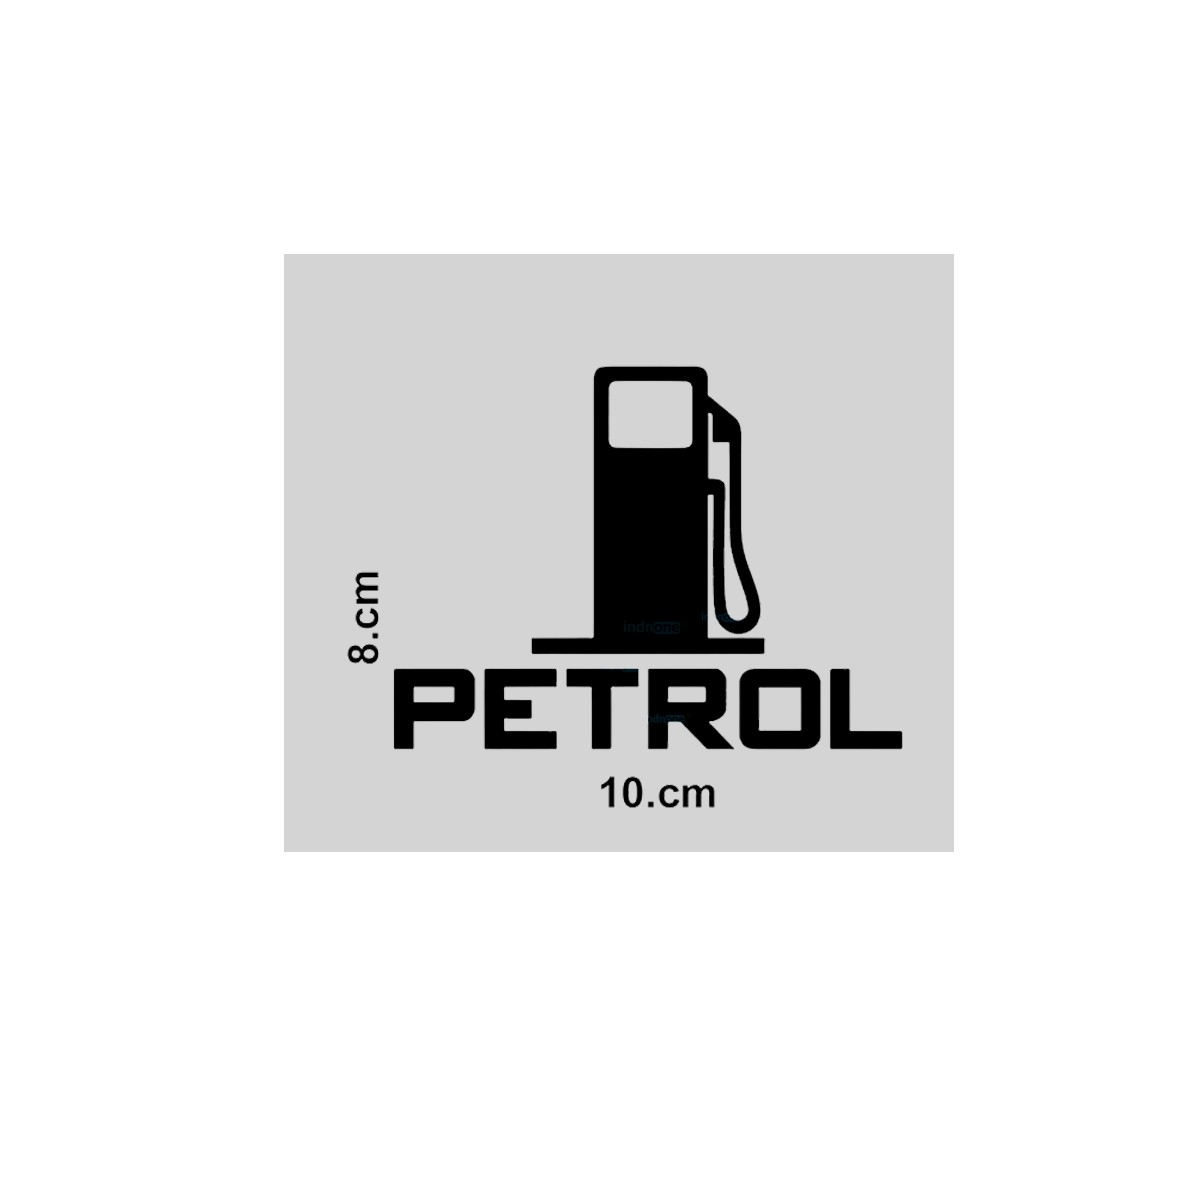 indnone® Hub Logo Petrol Sticker for Car. Car Sticker Stylish Fuel Lid | Black Standard Size